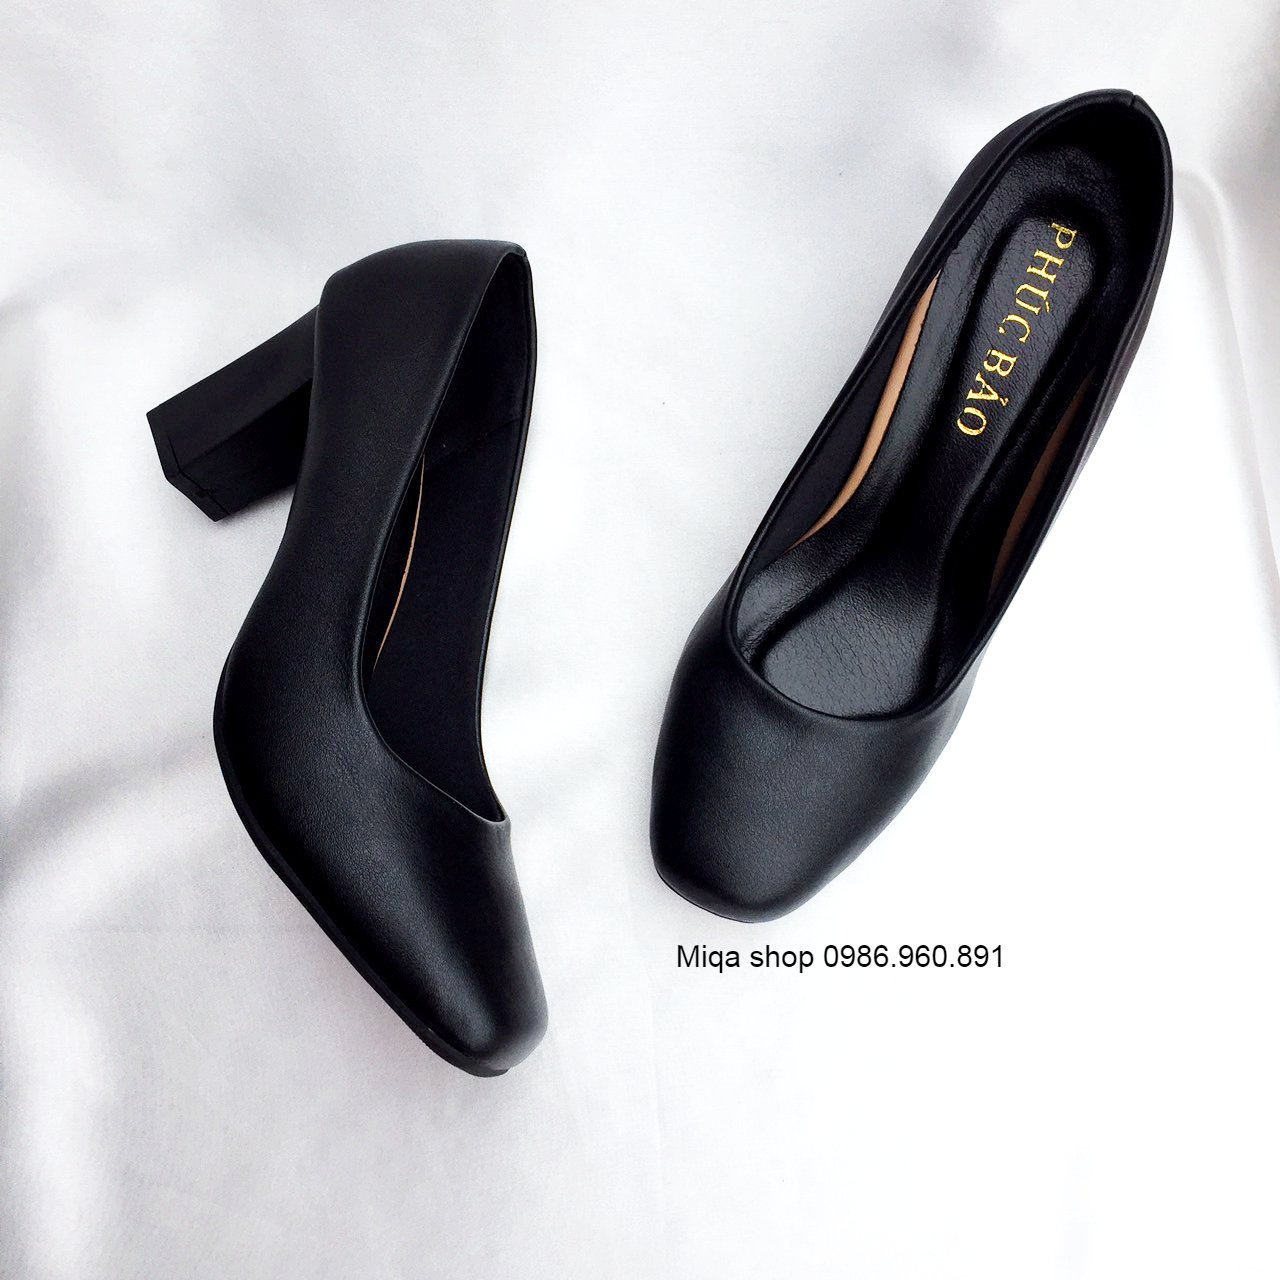 Size ngoại cỡ 35-42 - Giày cao gót thời trang mũi vuông đế vuông 5cm,7cm - Made in VietNam